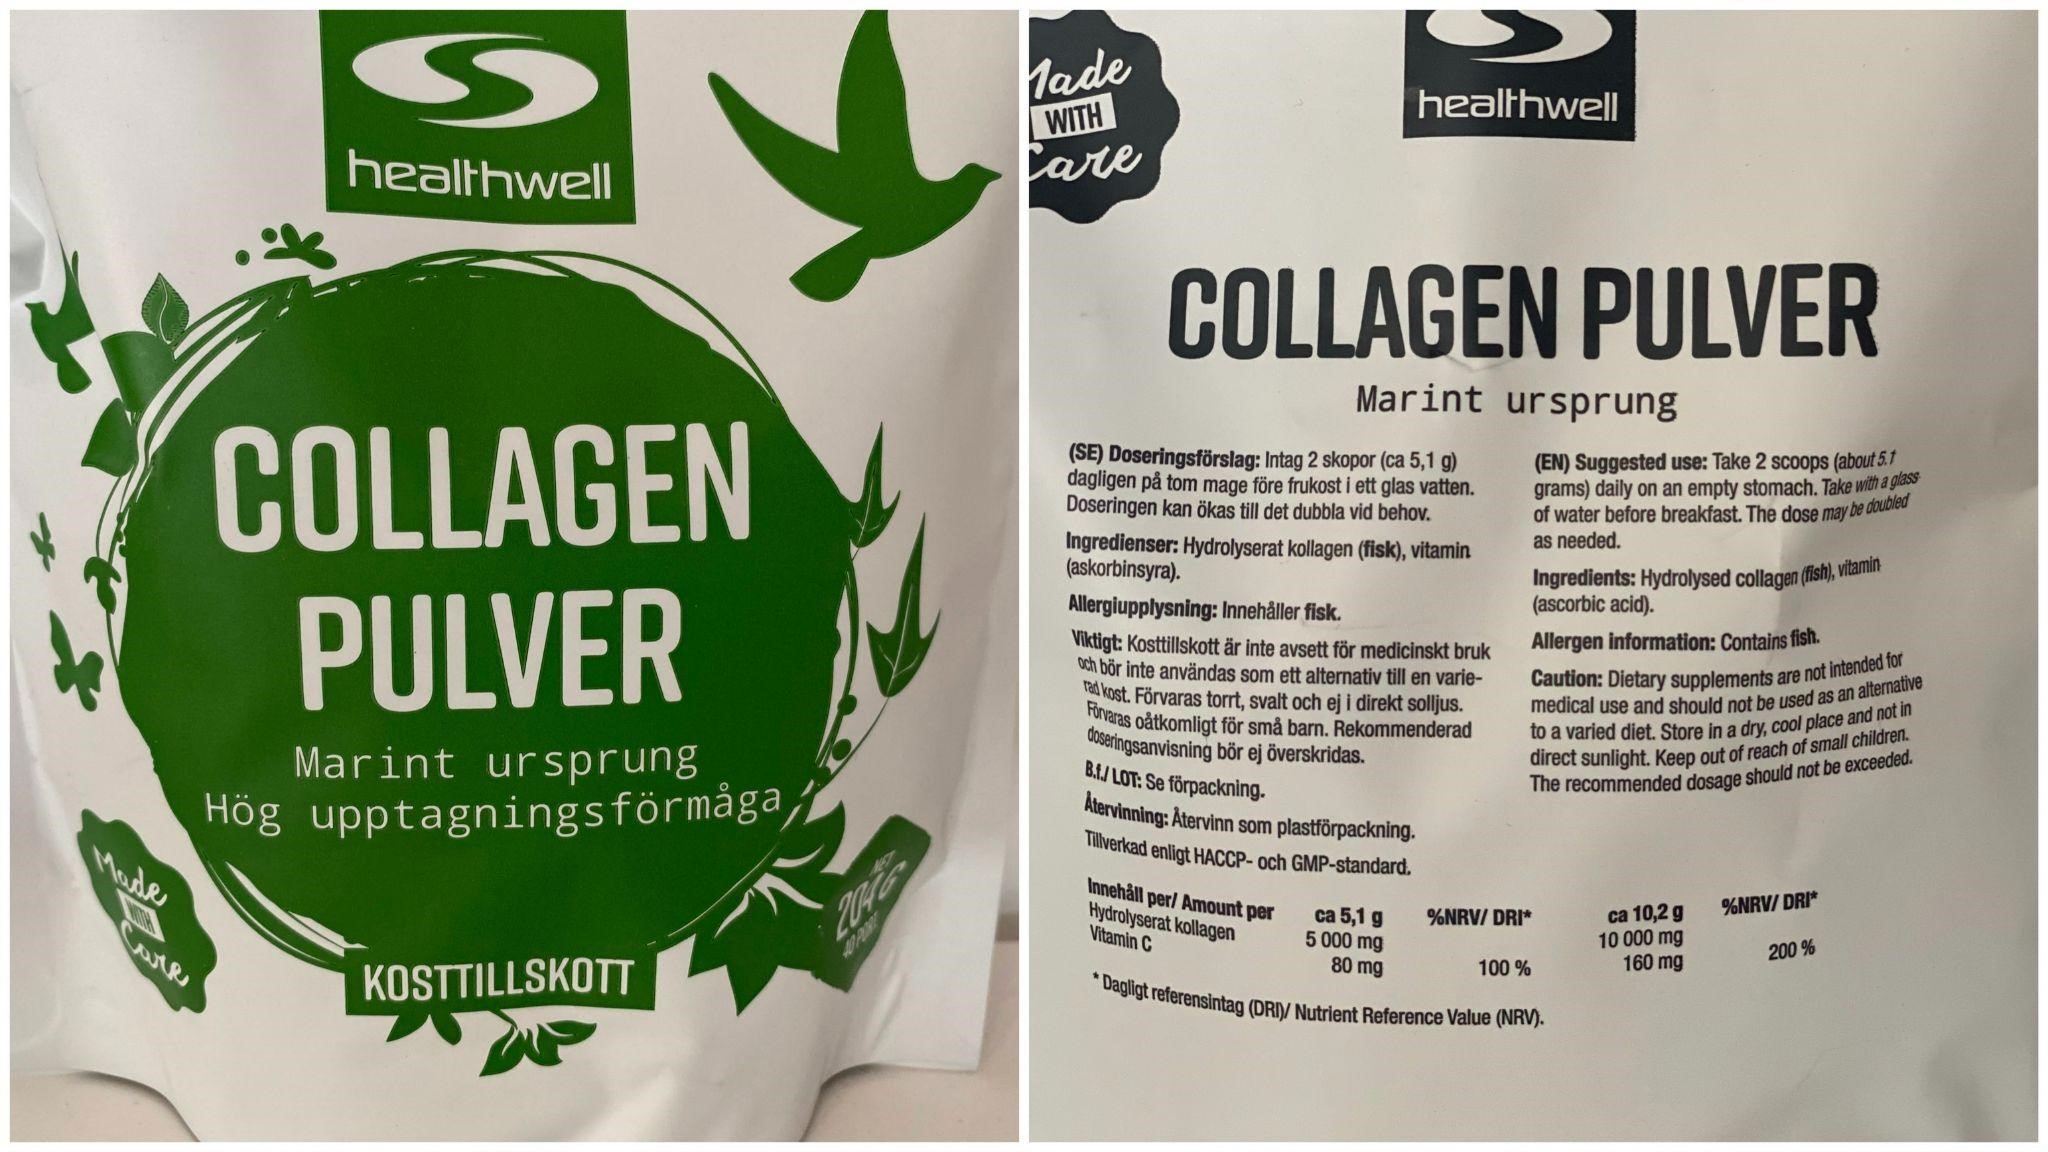 Healthwell Collagen Pulver Marin